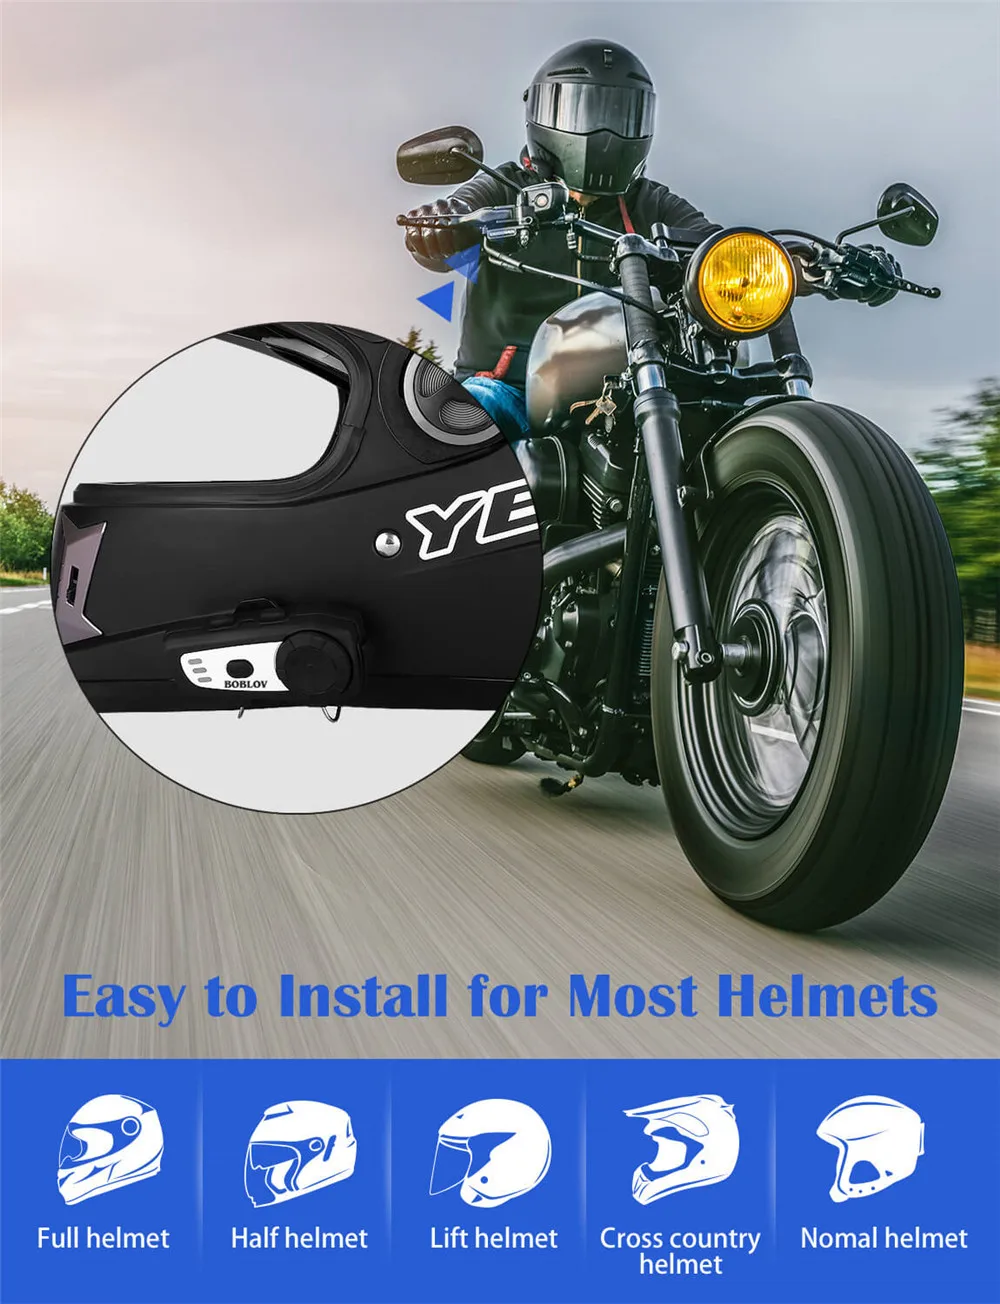 BOBLOV мотоциклетный шлем интеркомы Handsfree M6 btбеспроводной Bluetooth домофон мото гарнитура система связи FM MP3